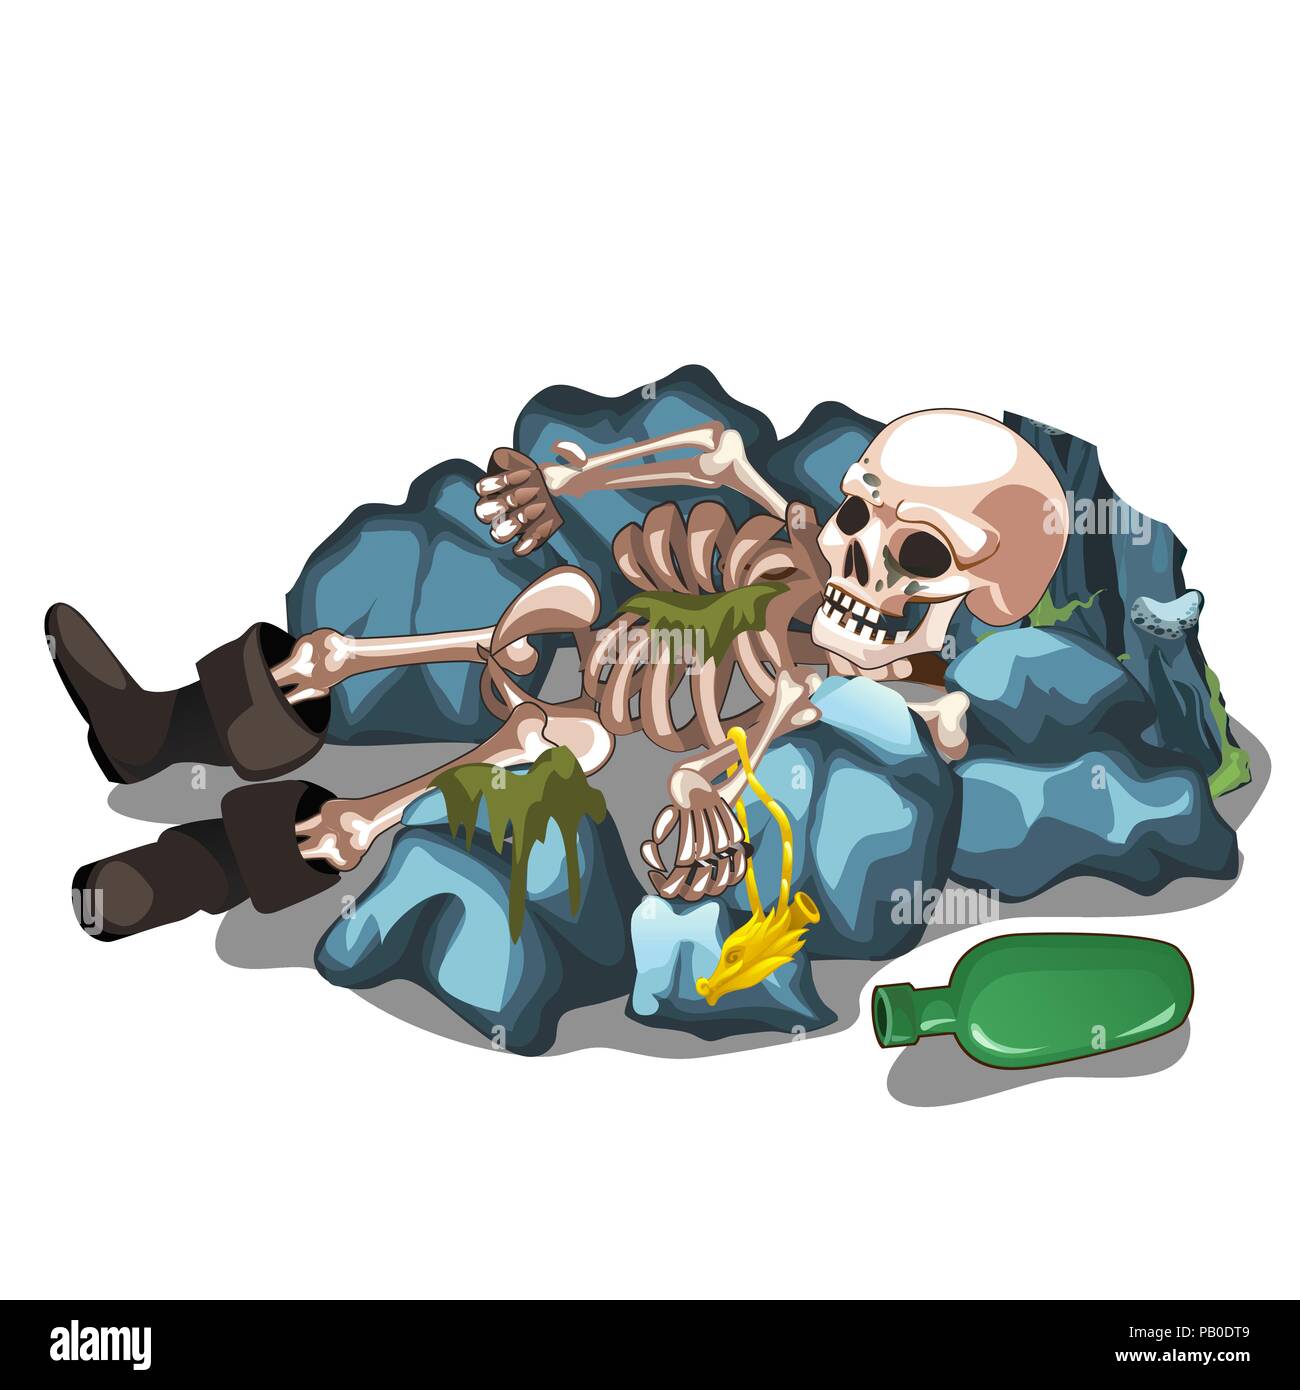 Corps squelettique d'un homme étendu sur les pierres isolé sur fond blanc. Le squelette d'un humain. Cartoon Vector illustration close-up. Illustration de Vecteur